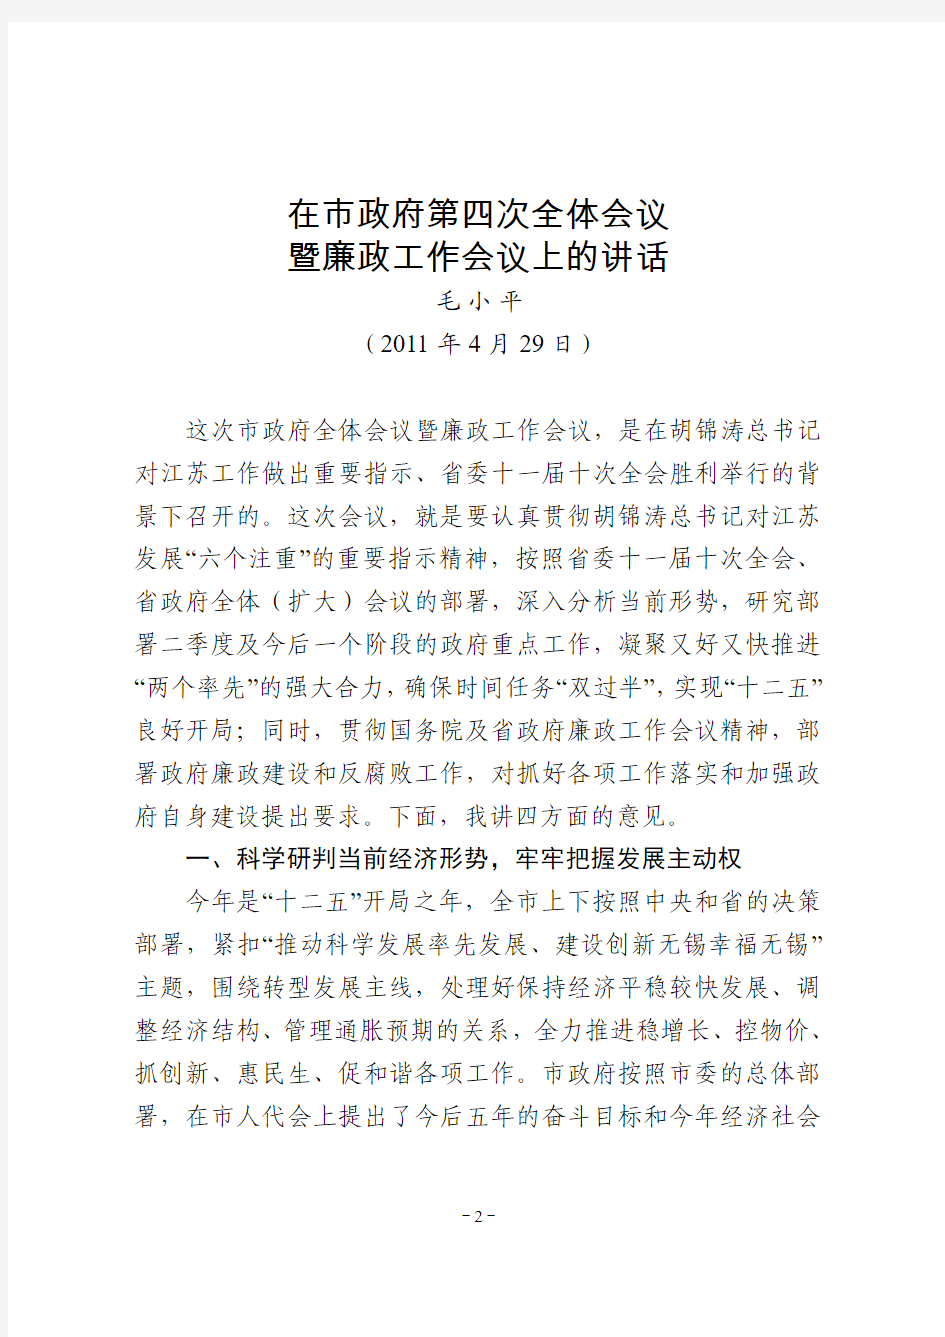 毛小平同志在市政府第四次全体会议暨廉政工作会议上的讲话